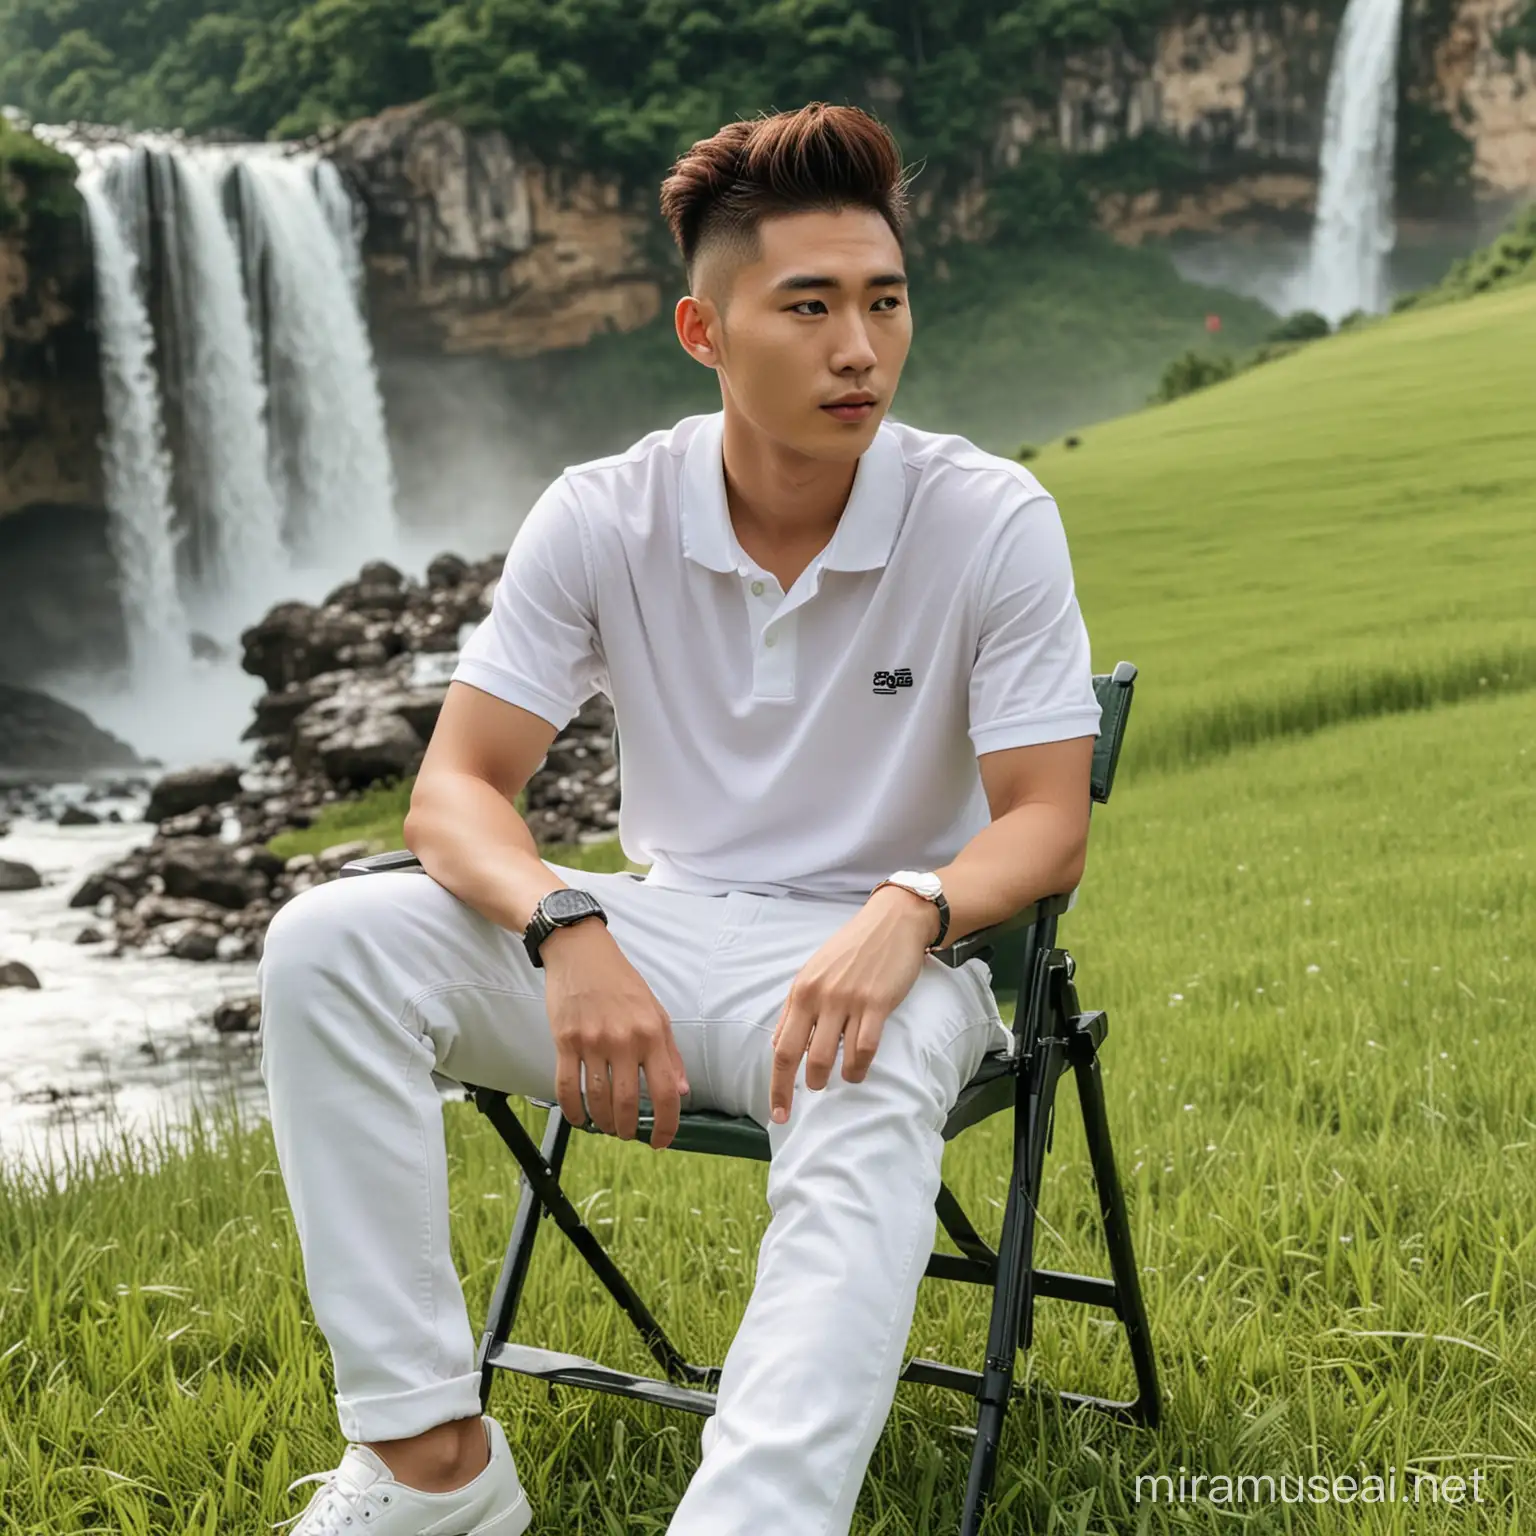 Laki-laki korea umur 25 tahun undercut faux hawk hairstyle, baju polo putih celana jeans duduk di kursi portabel di dataran hijau dengan background air terjun yang indah 